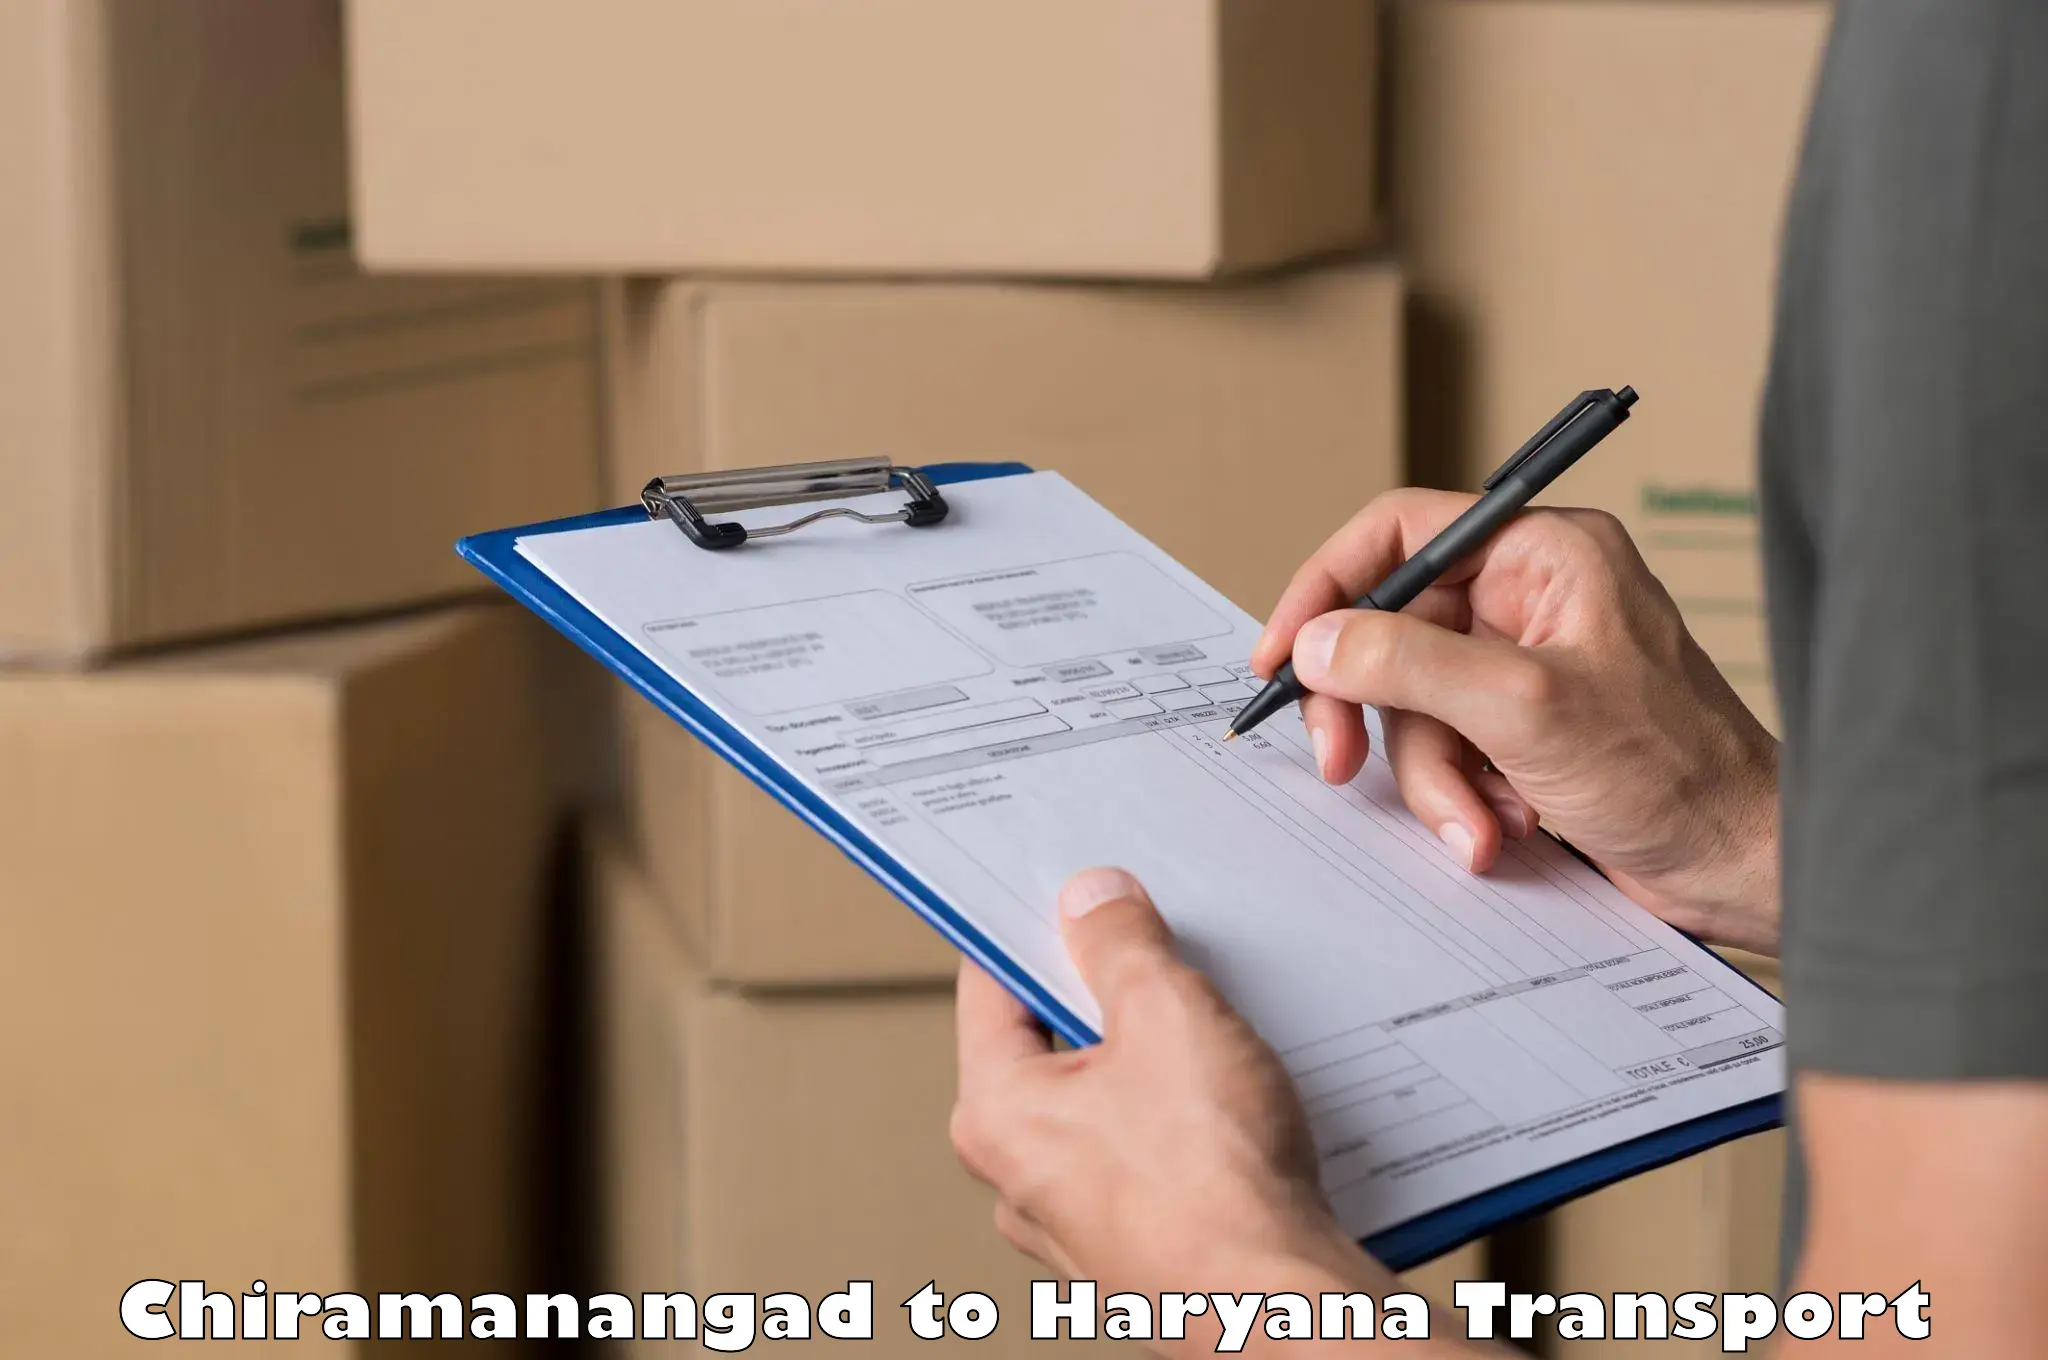 Container transport service Chiramanangad to Narwana